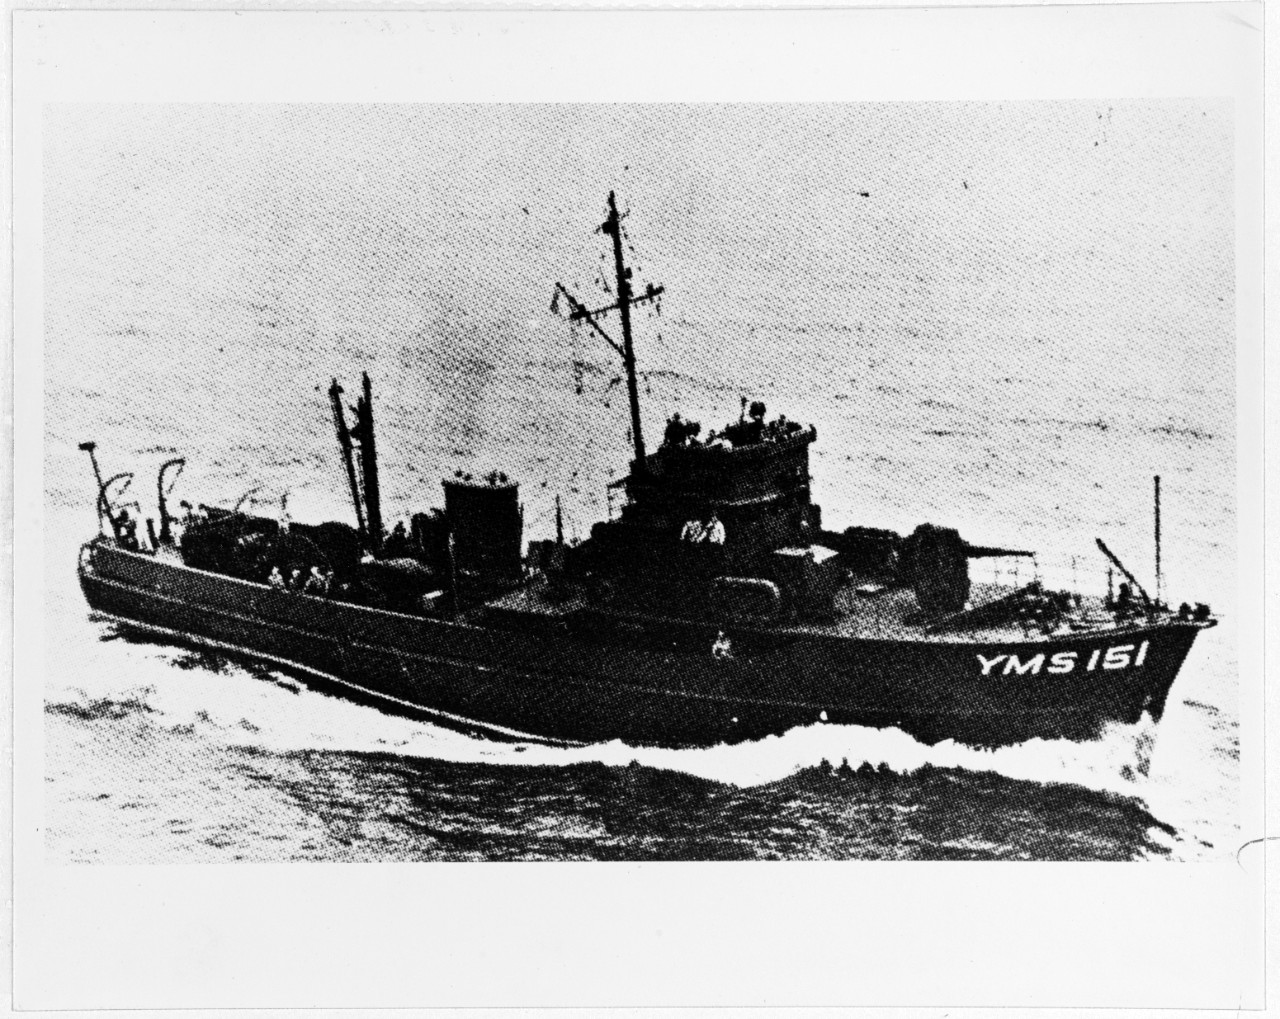 USS YMS - 151